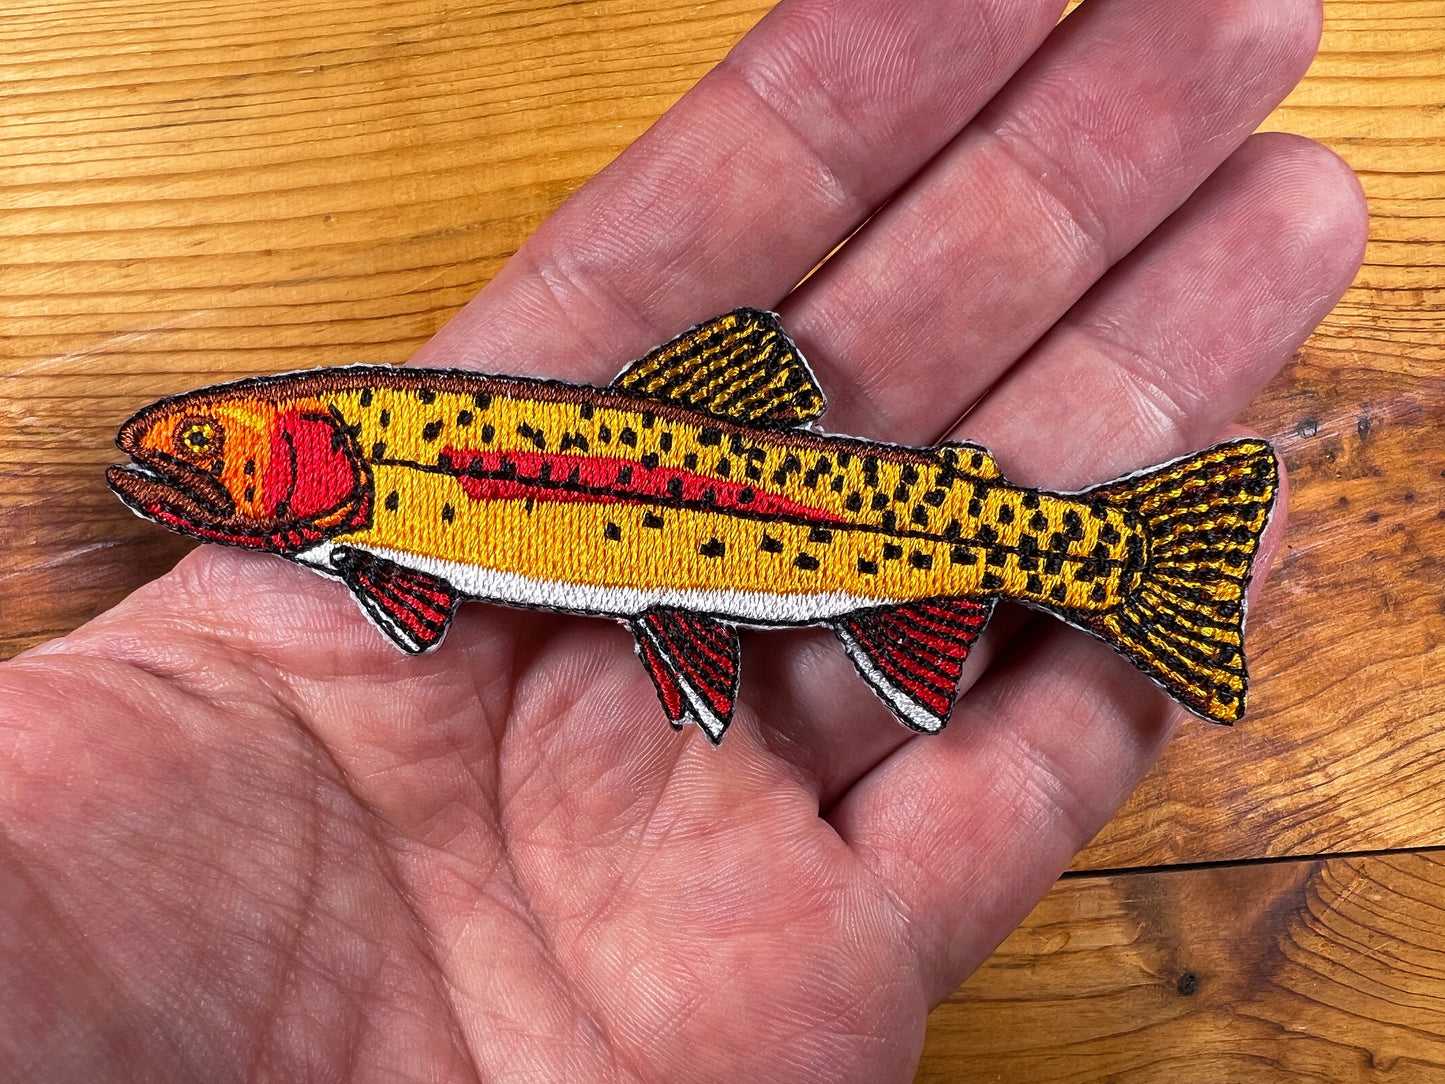 Yellowstone Cutthroat Forelle Aufnäher zum Aufbügeln | Hochwertige Fischaufnäher für Jacken, Mützen, Westen, Rucksäcke | Geschenke zum Thema Fliegenfischen